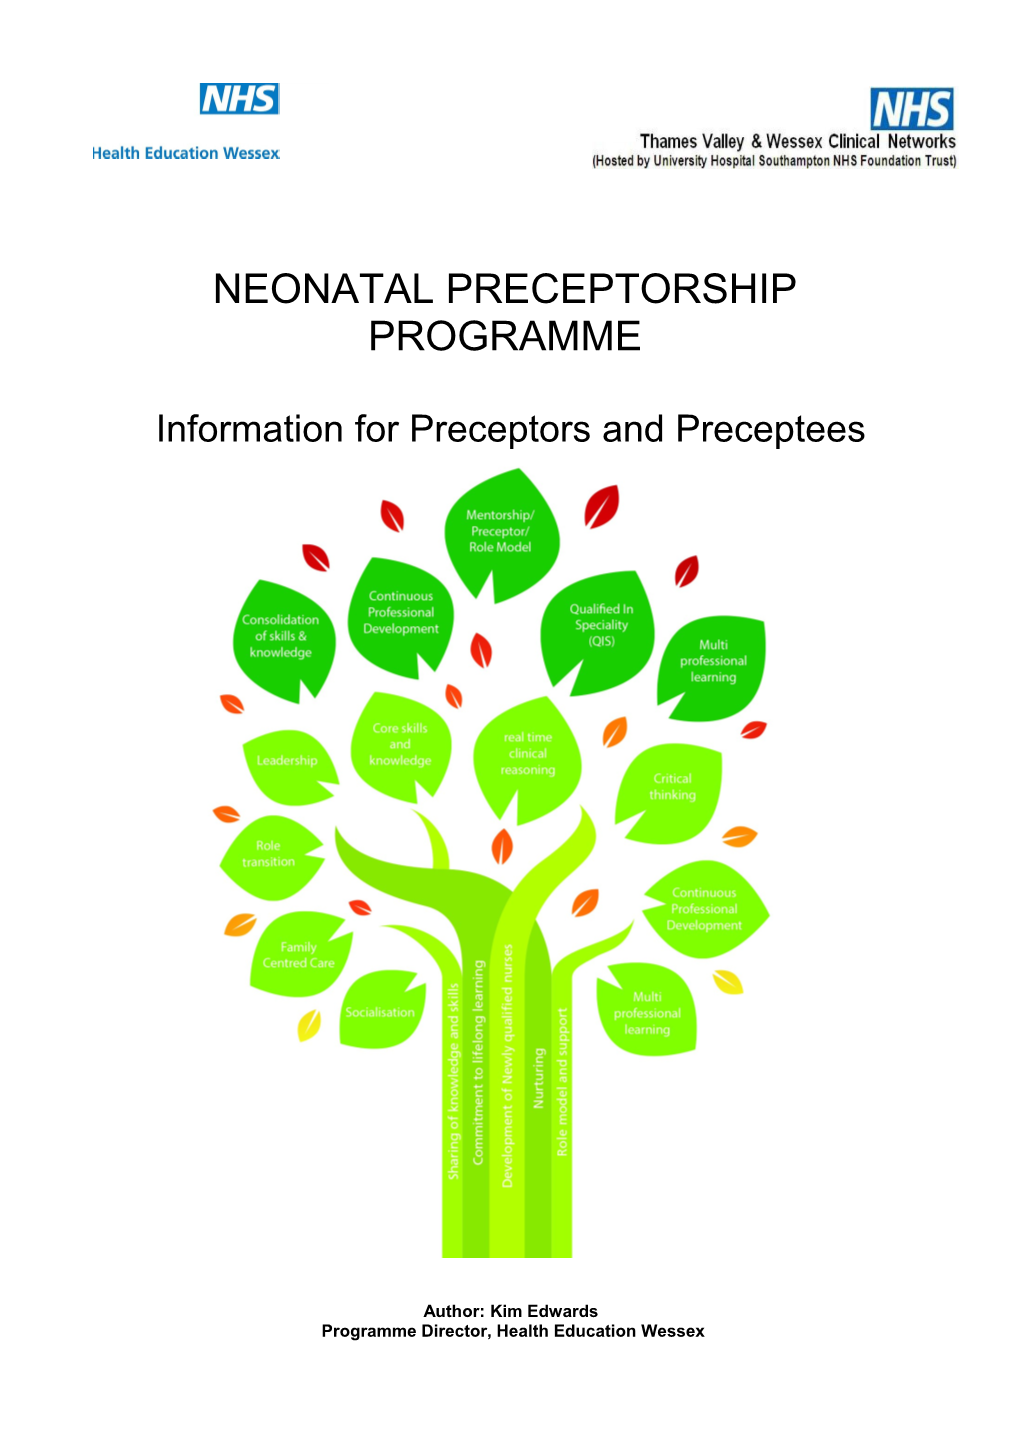 Information for Preceptors and Preceptees